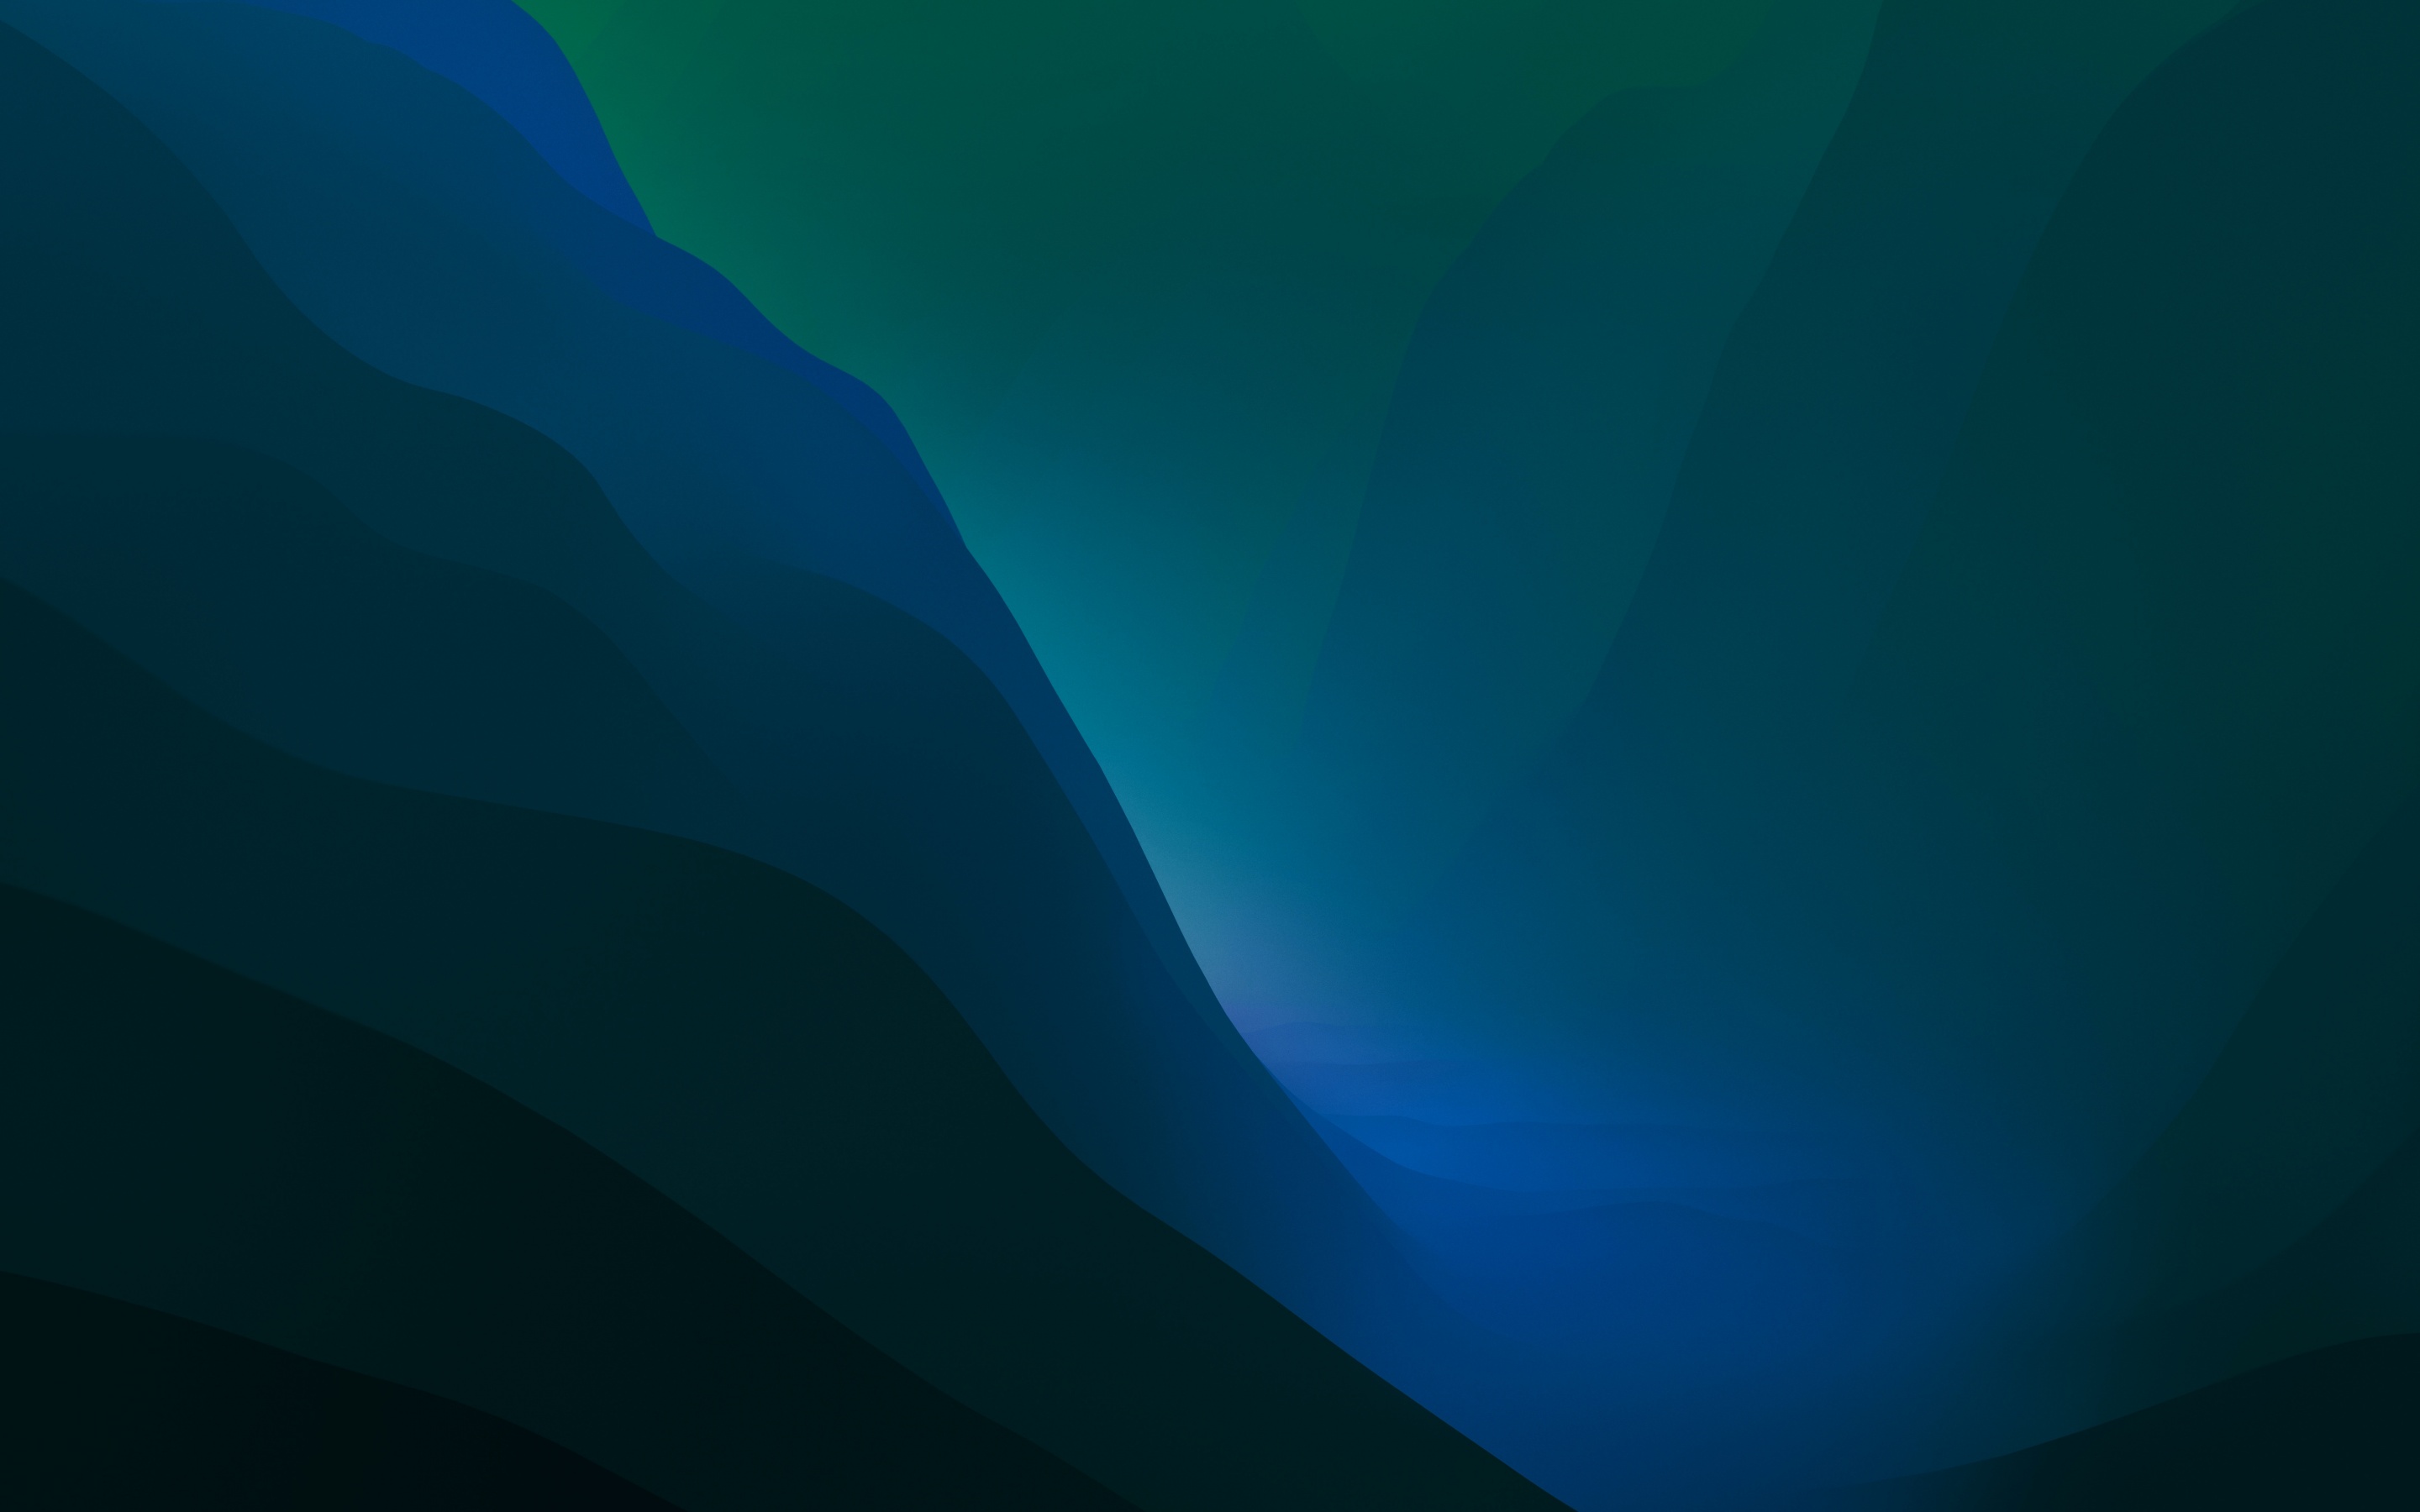 Hình nền macOS Monterey Wallpaper 4K với màu xanh dịu dàng sẽ mang đến cho bạn những trải nghiệm khác biệt với thiết bị của mình. Hãy ngắm nhìn bức tranh tuyệt đẹp này để cảm nhận được sự nổi bật của nó.